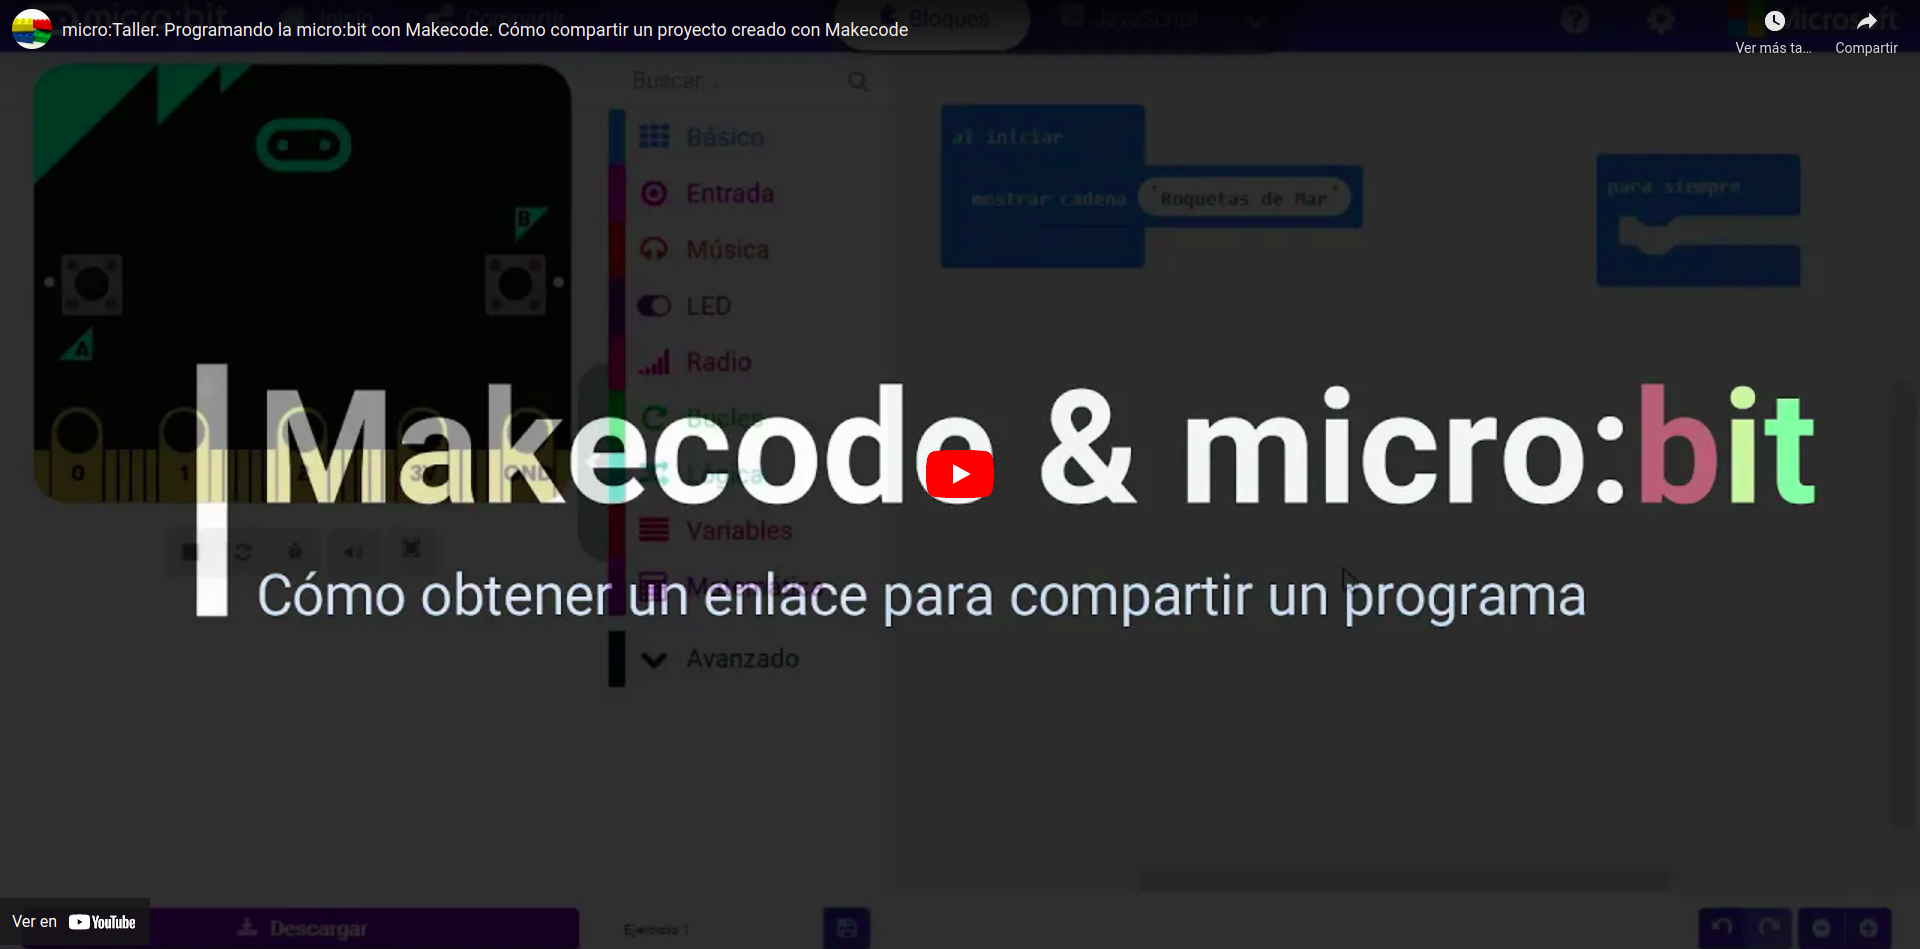 Vídeo que describe cómo compartir un proyecto elaborado con MakeCode